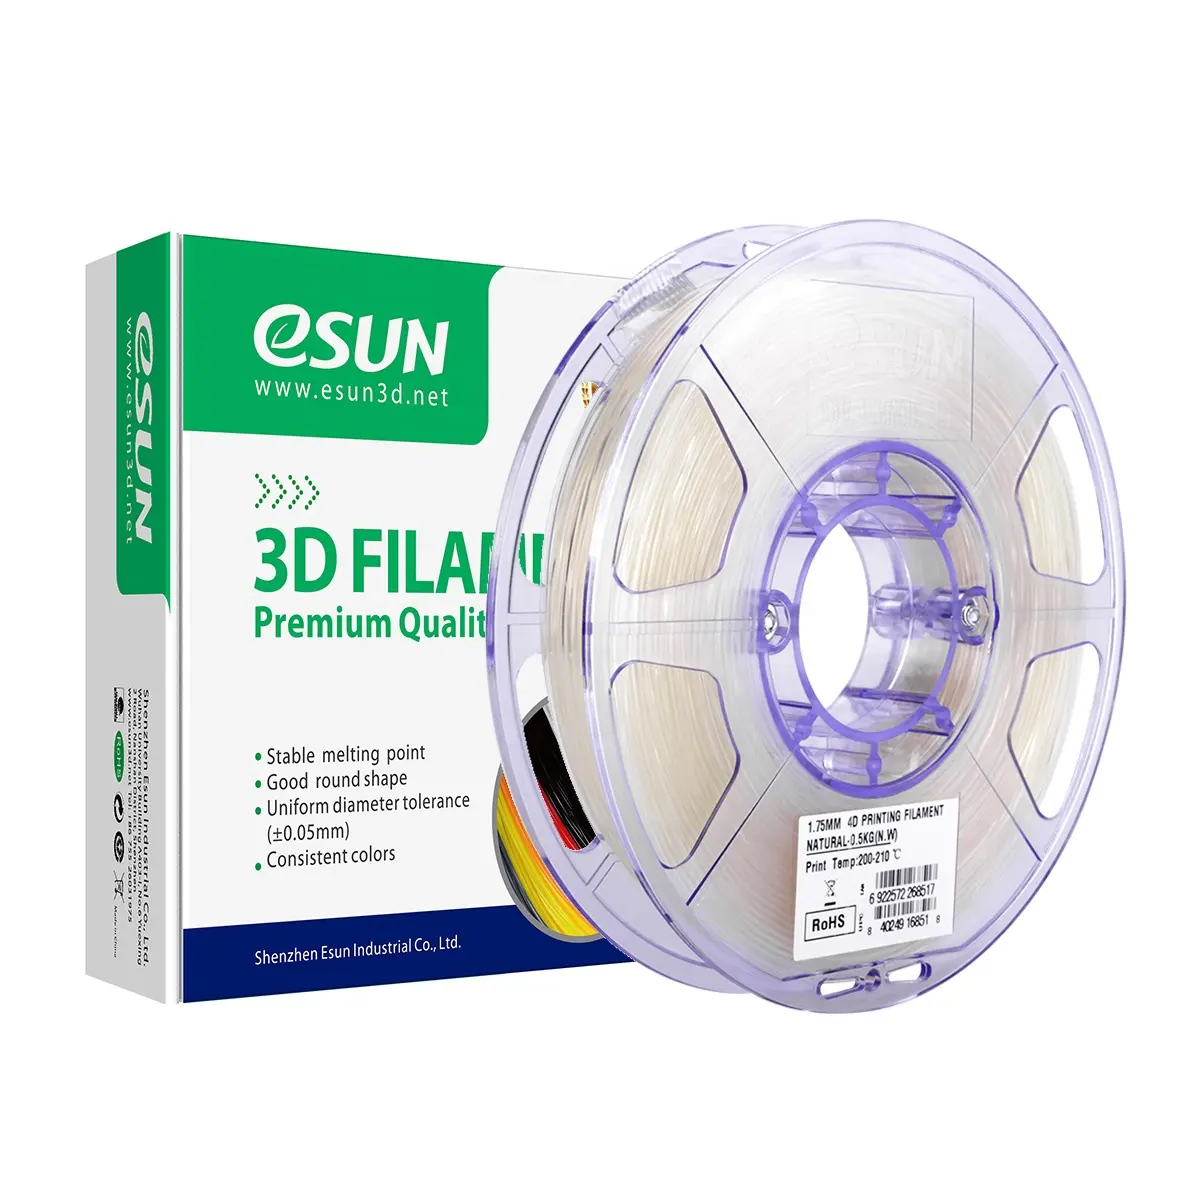 eSUN 4D Filament e4D-1 1.75mm Shape Memory function 3D Printer Filament